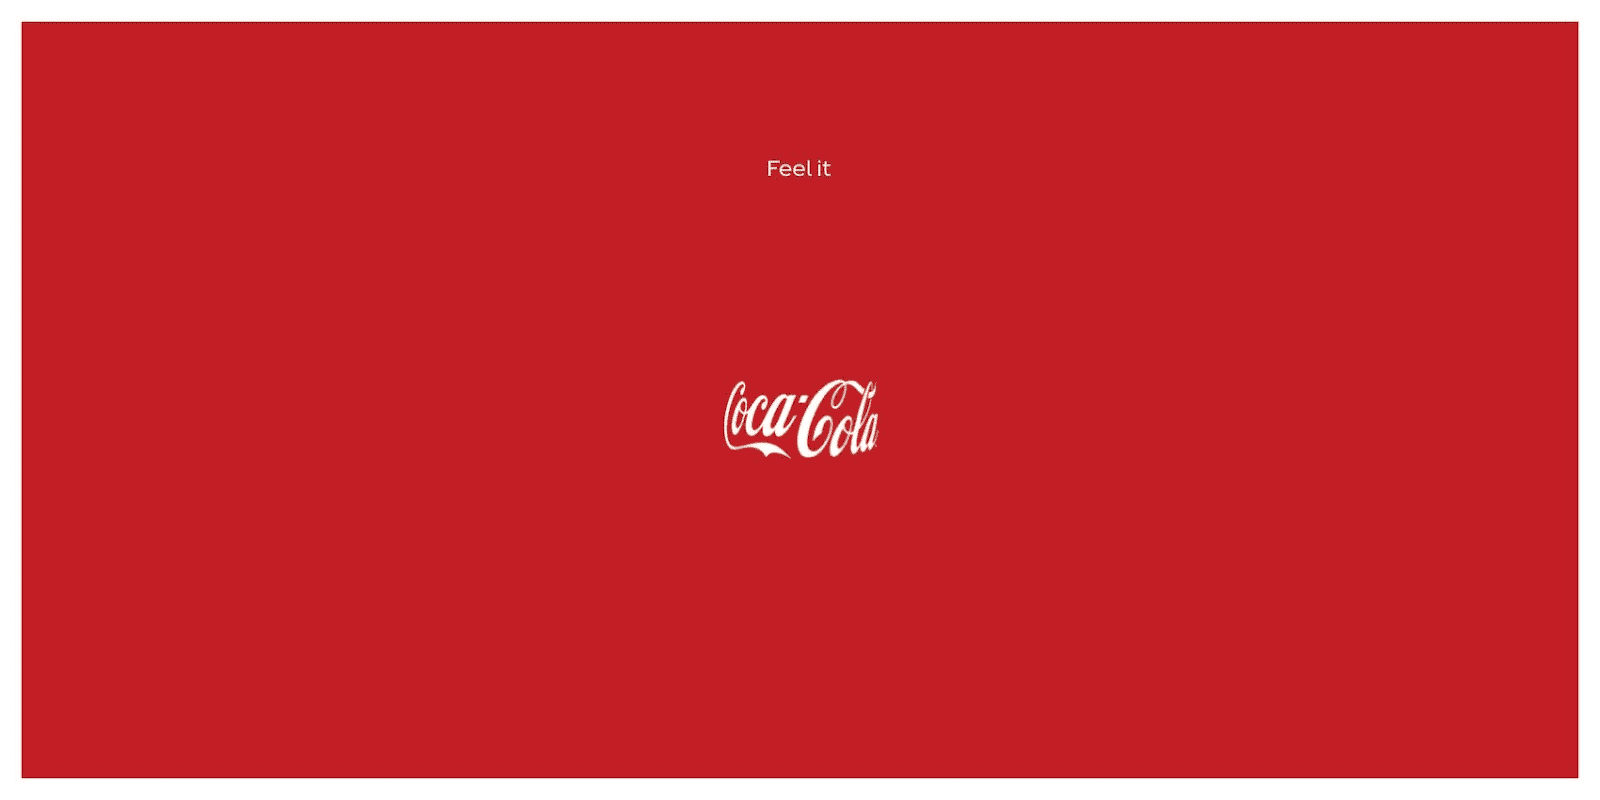 Coca-Cola, Feel it, Publicis Agency, Italy